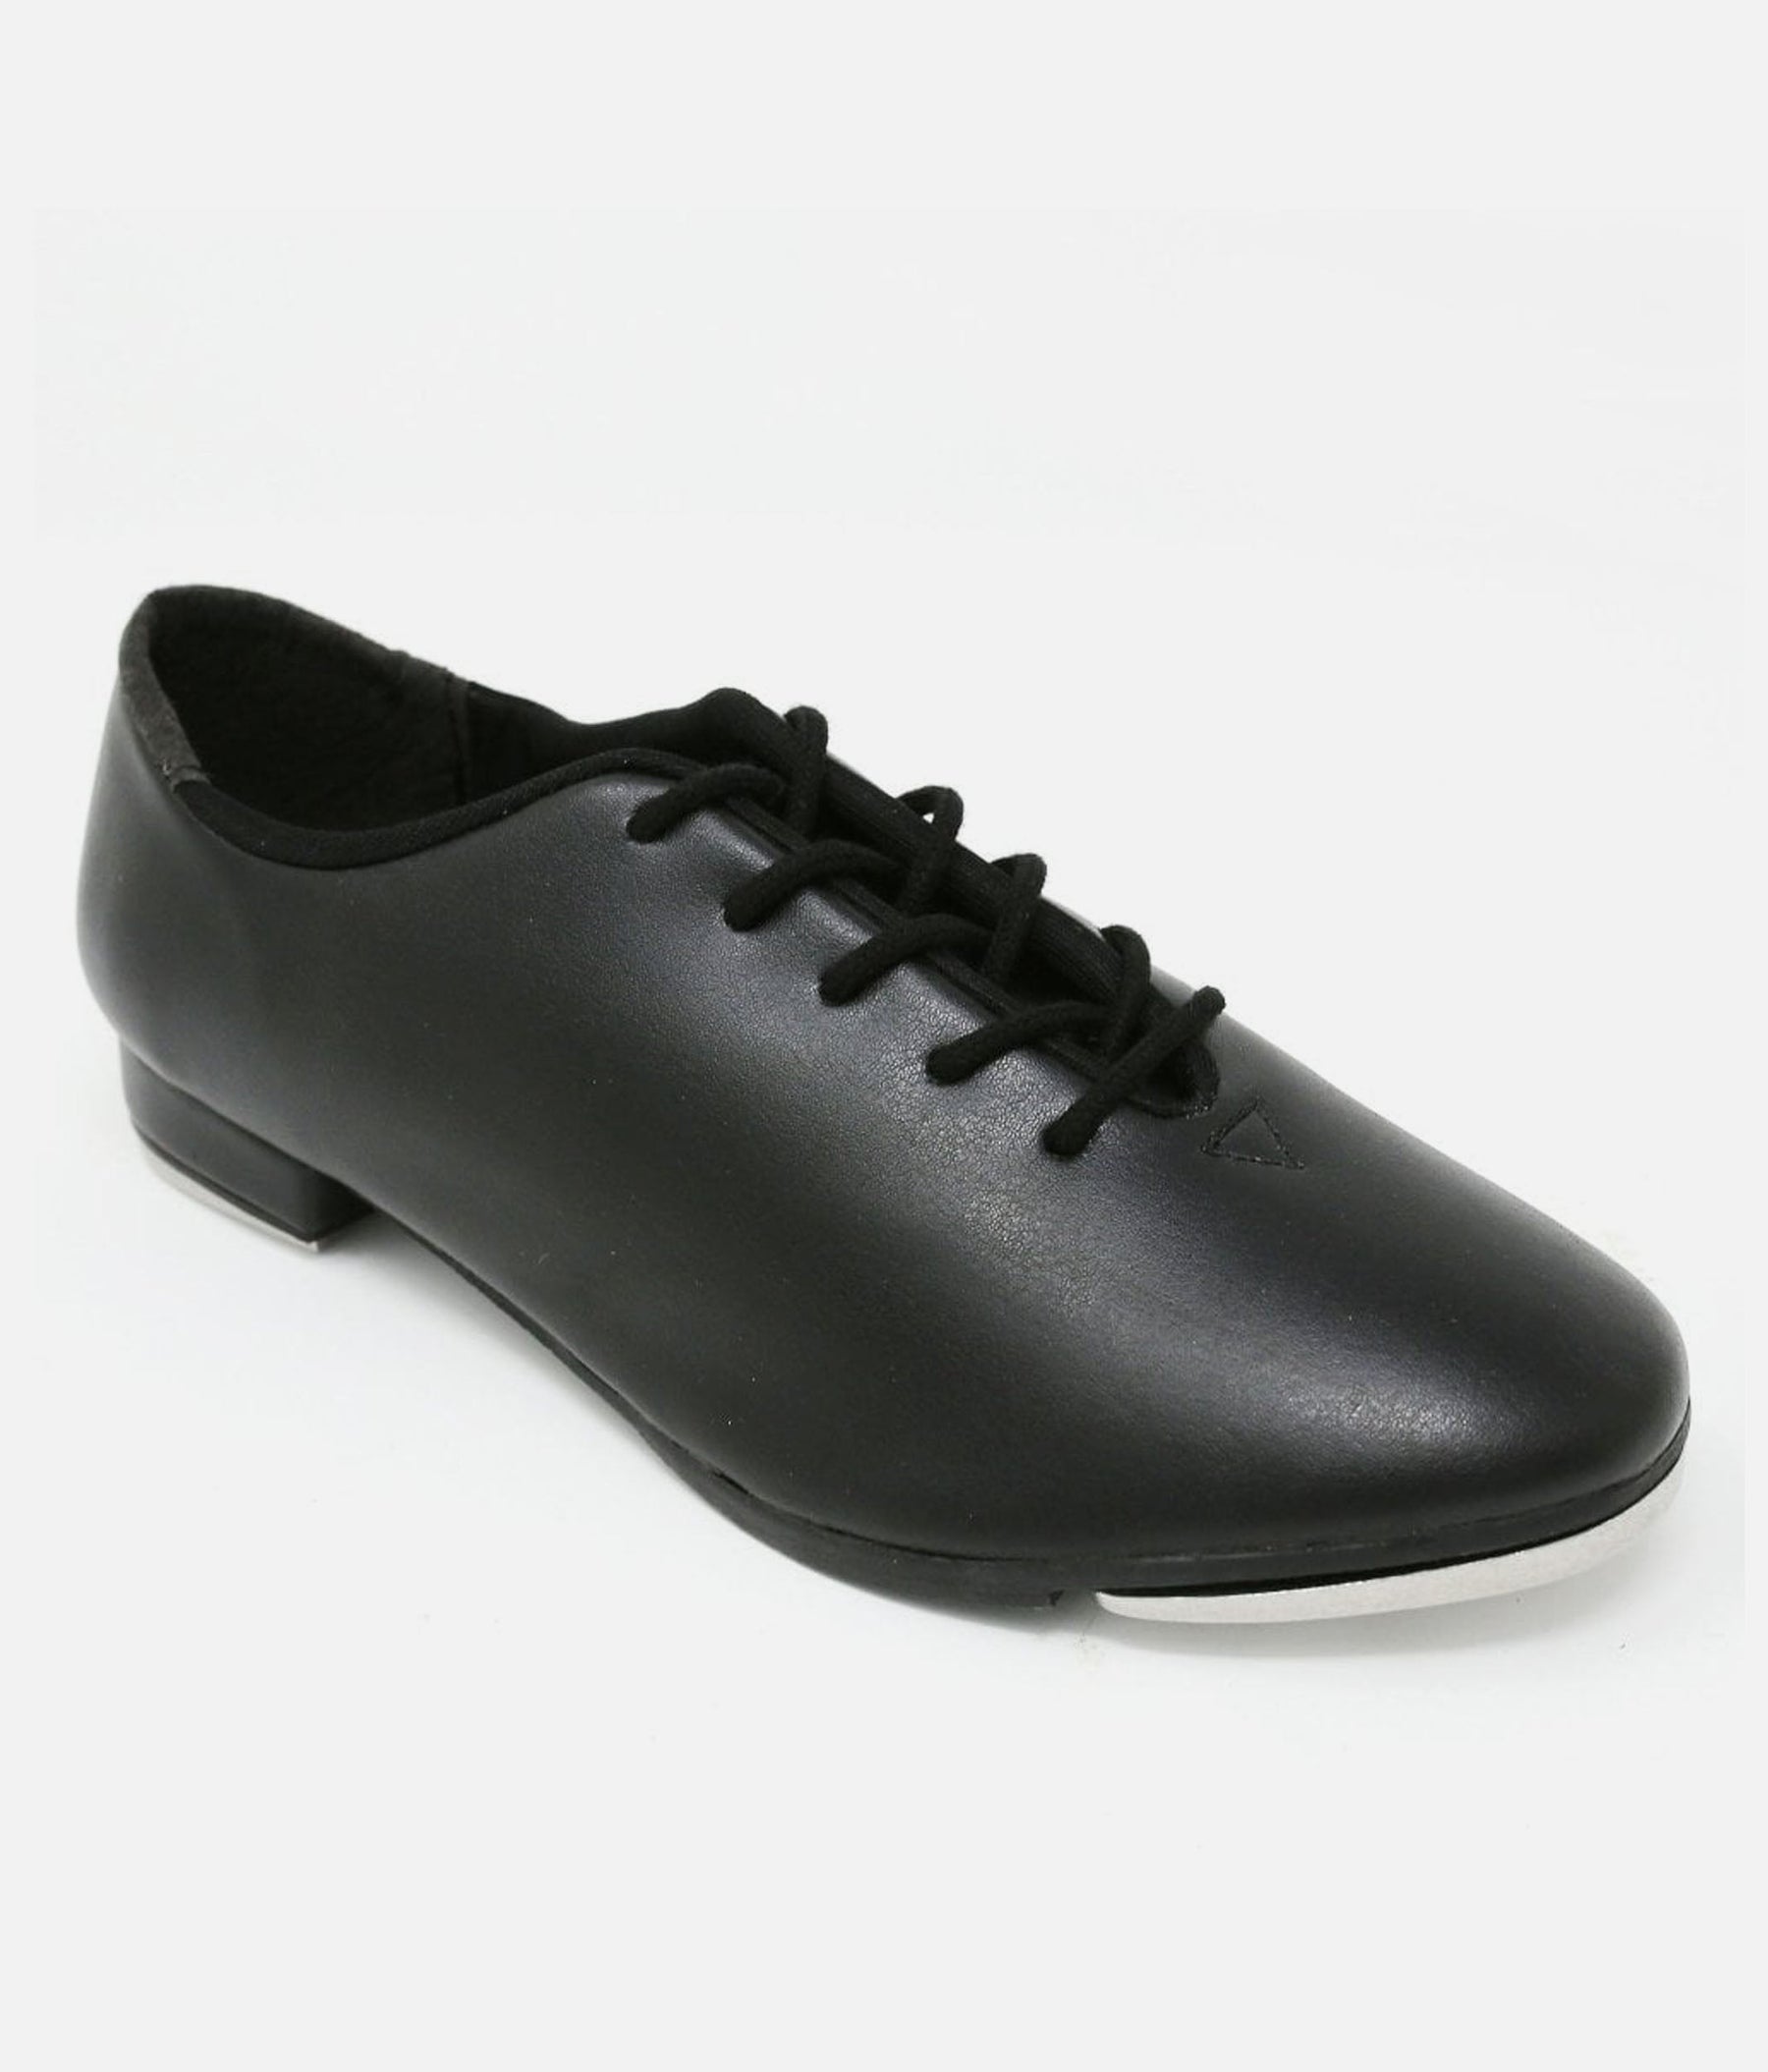 Oxford Style Tap Shoe - TA 04/05